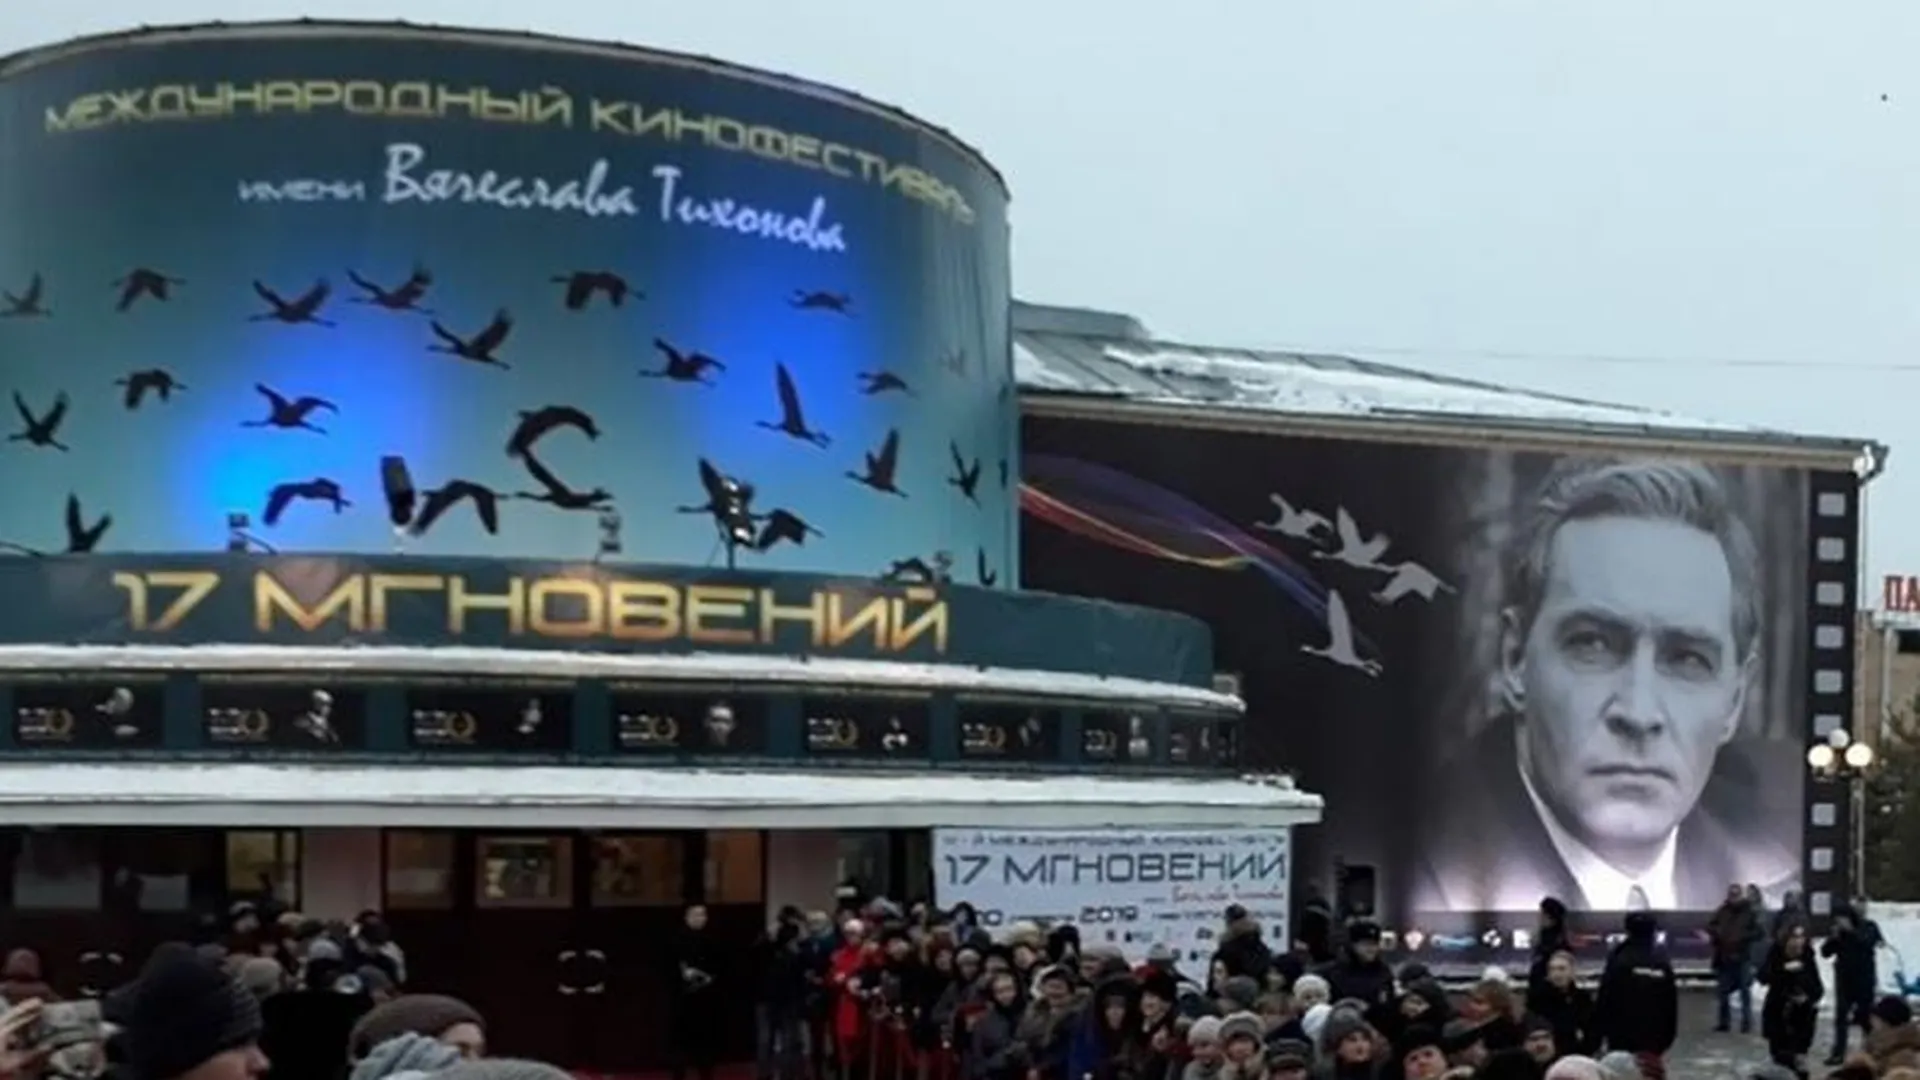 Международный кинофестиваль «17 мгновений» открылся в Павловском Посаде